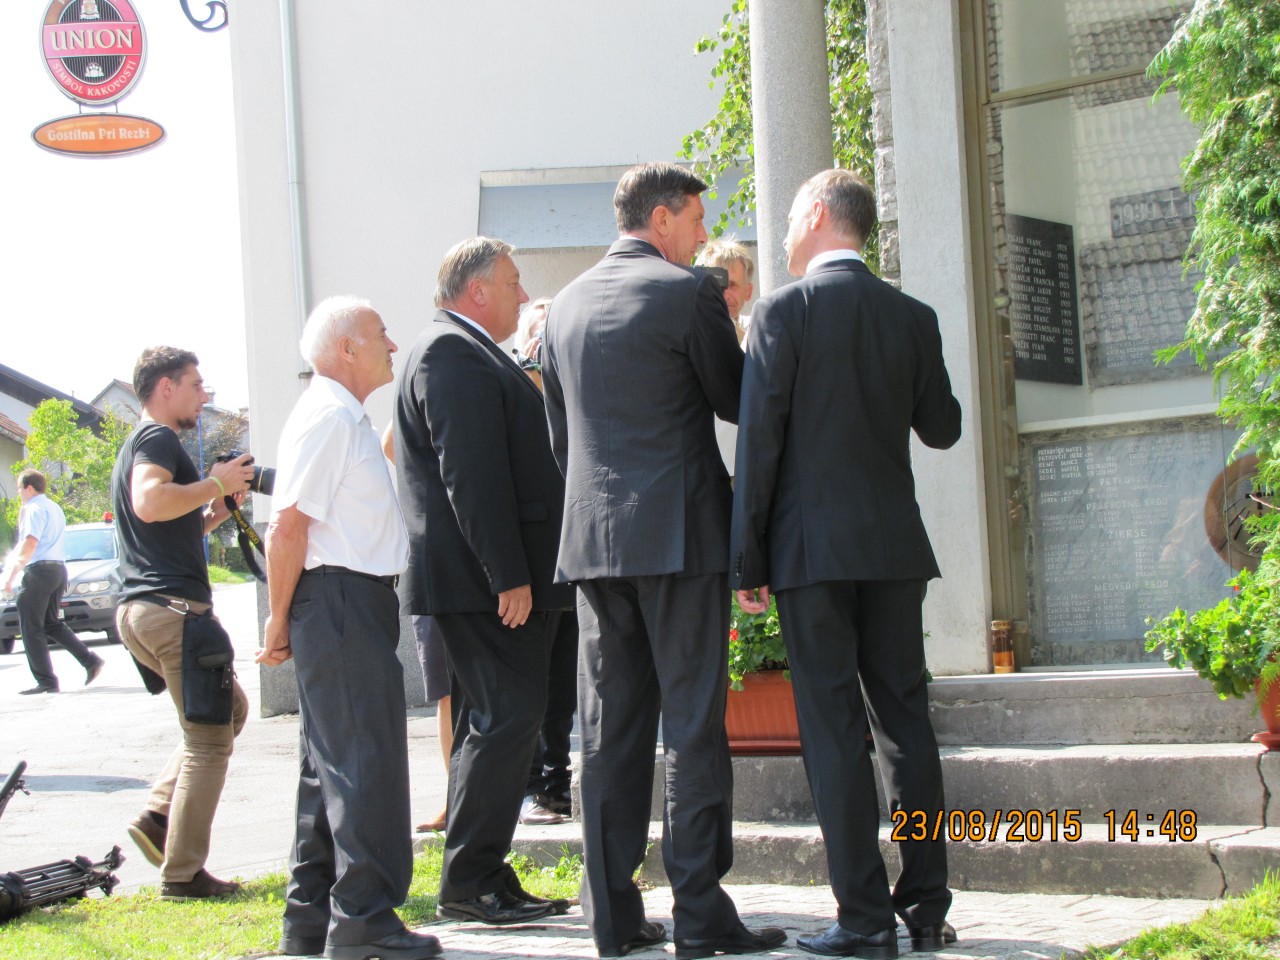 Rovte ob evropskem dnevu totalitarnih in avtoritarnih režimov 23. avgust 2015, Jože Leskovec razloži zgodovino in pomen Spravne Kapele